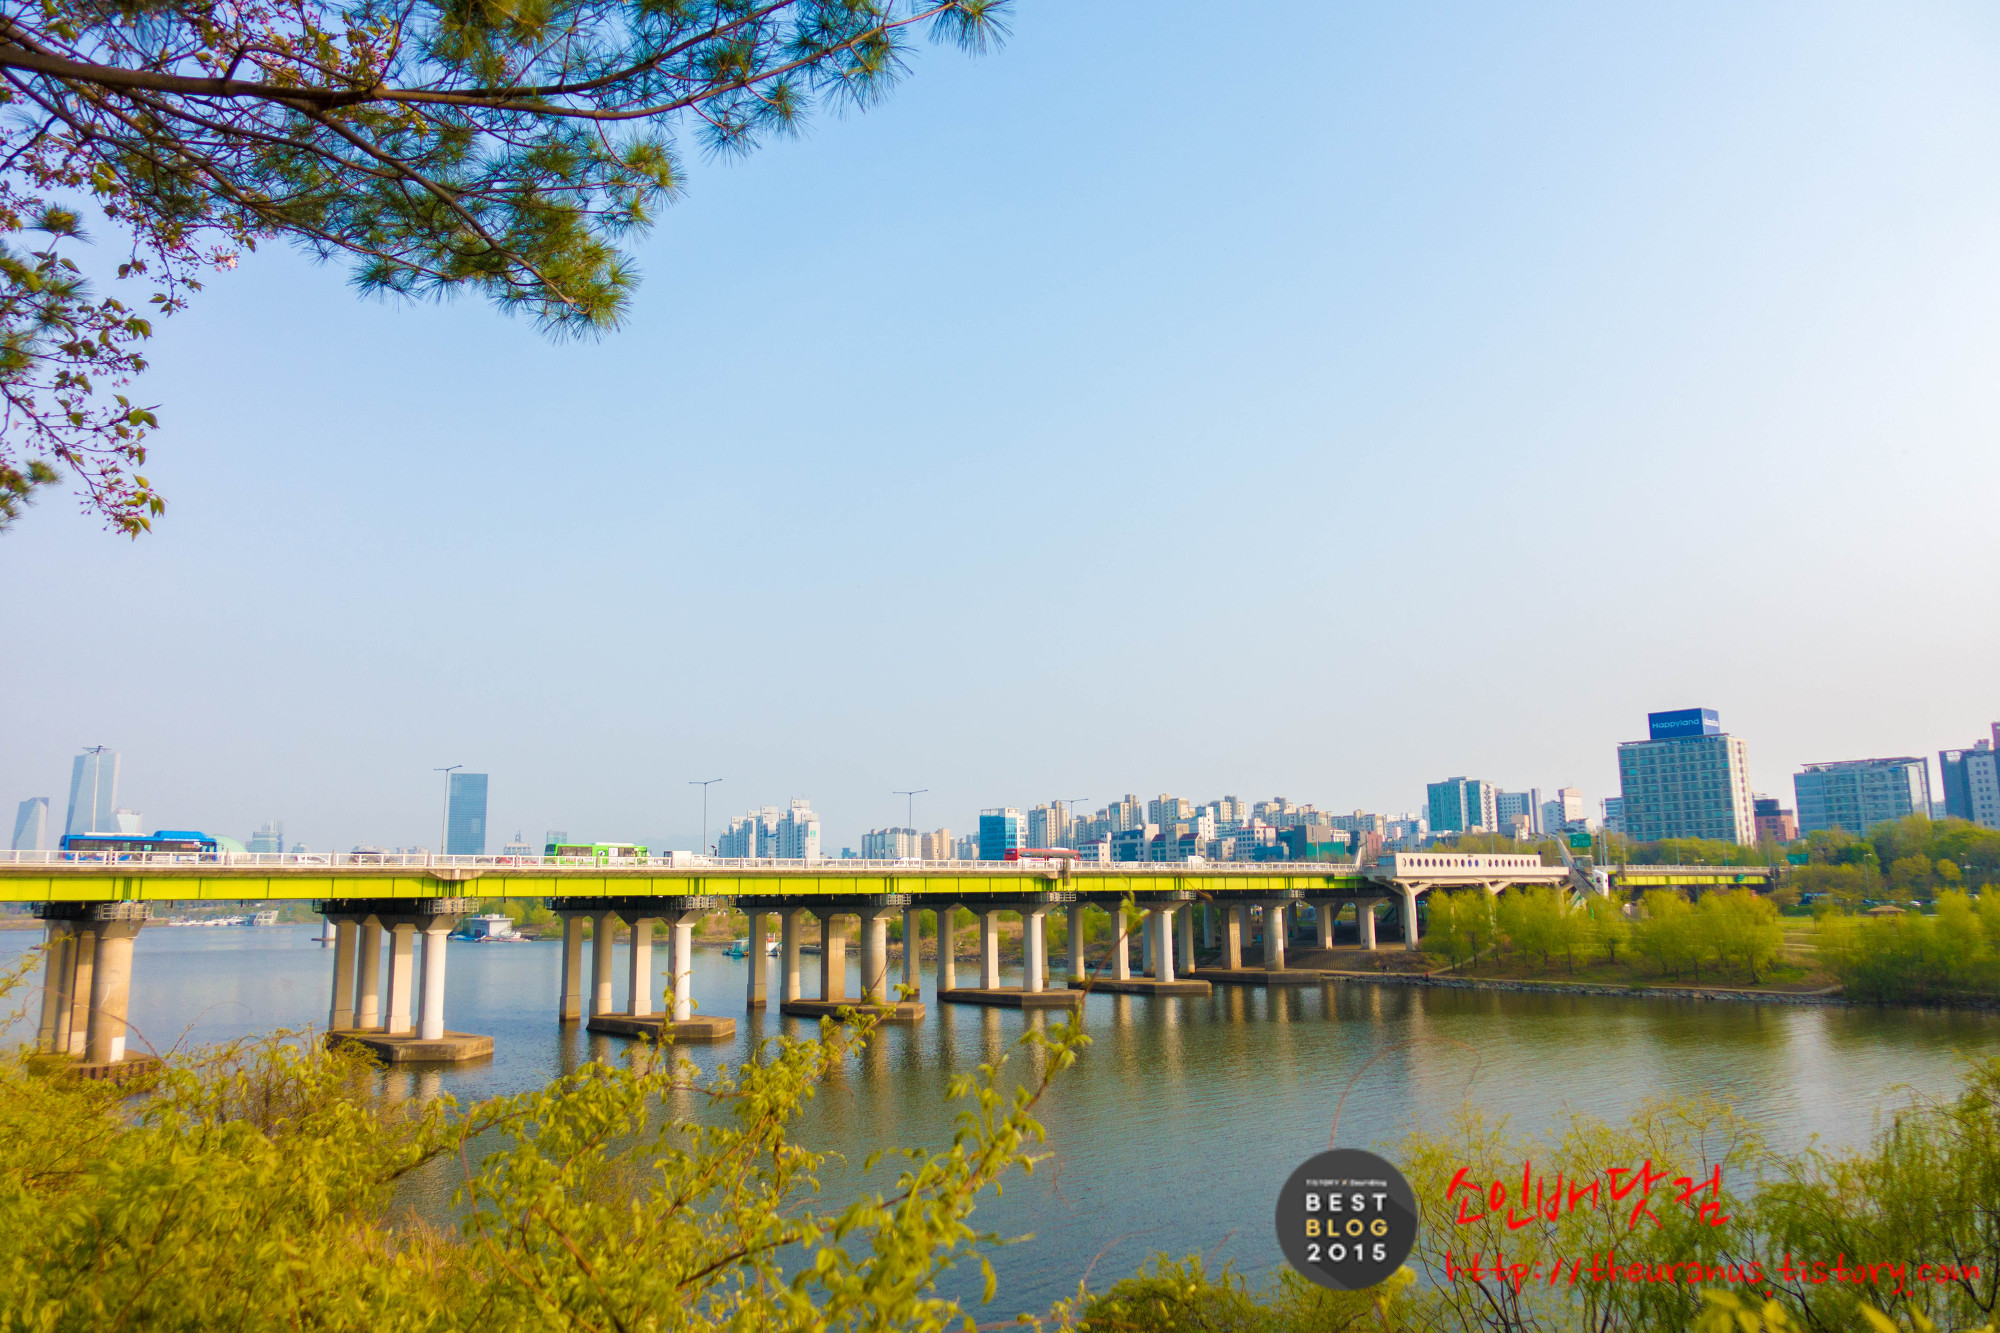 서울 한강 "선유도 공원"